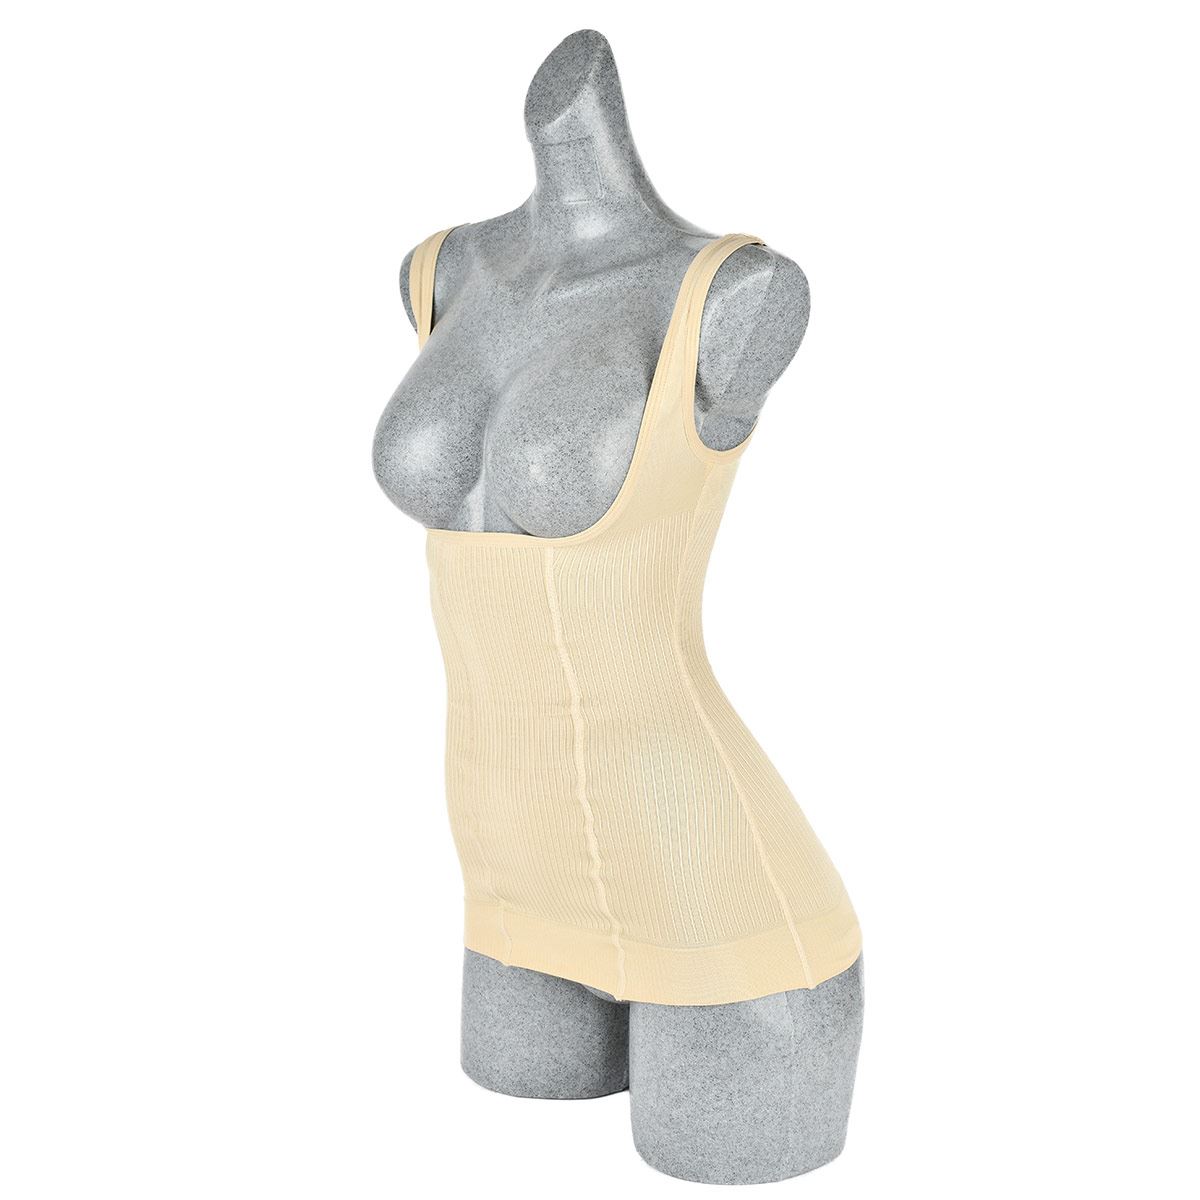 Camiseta senos libres Body Siluette seamless alto control invisible 107-4232 grande nude dama